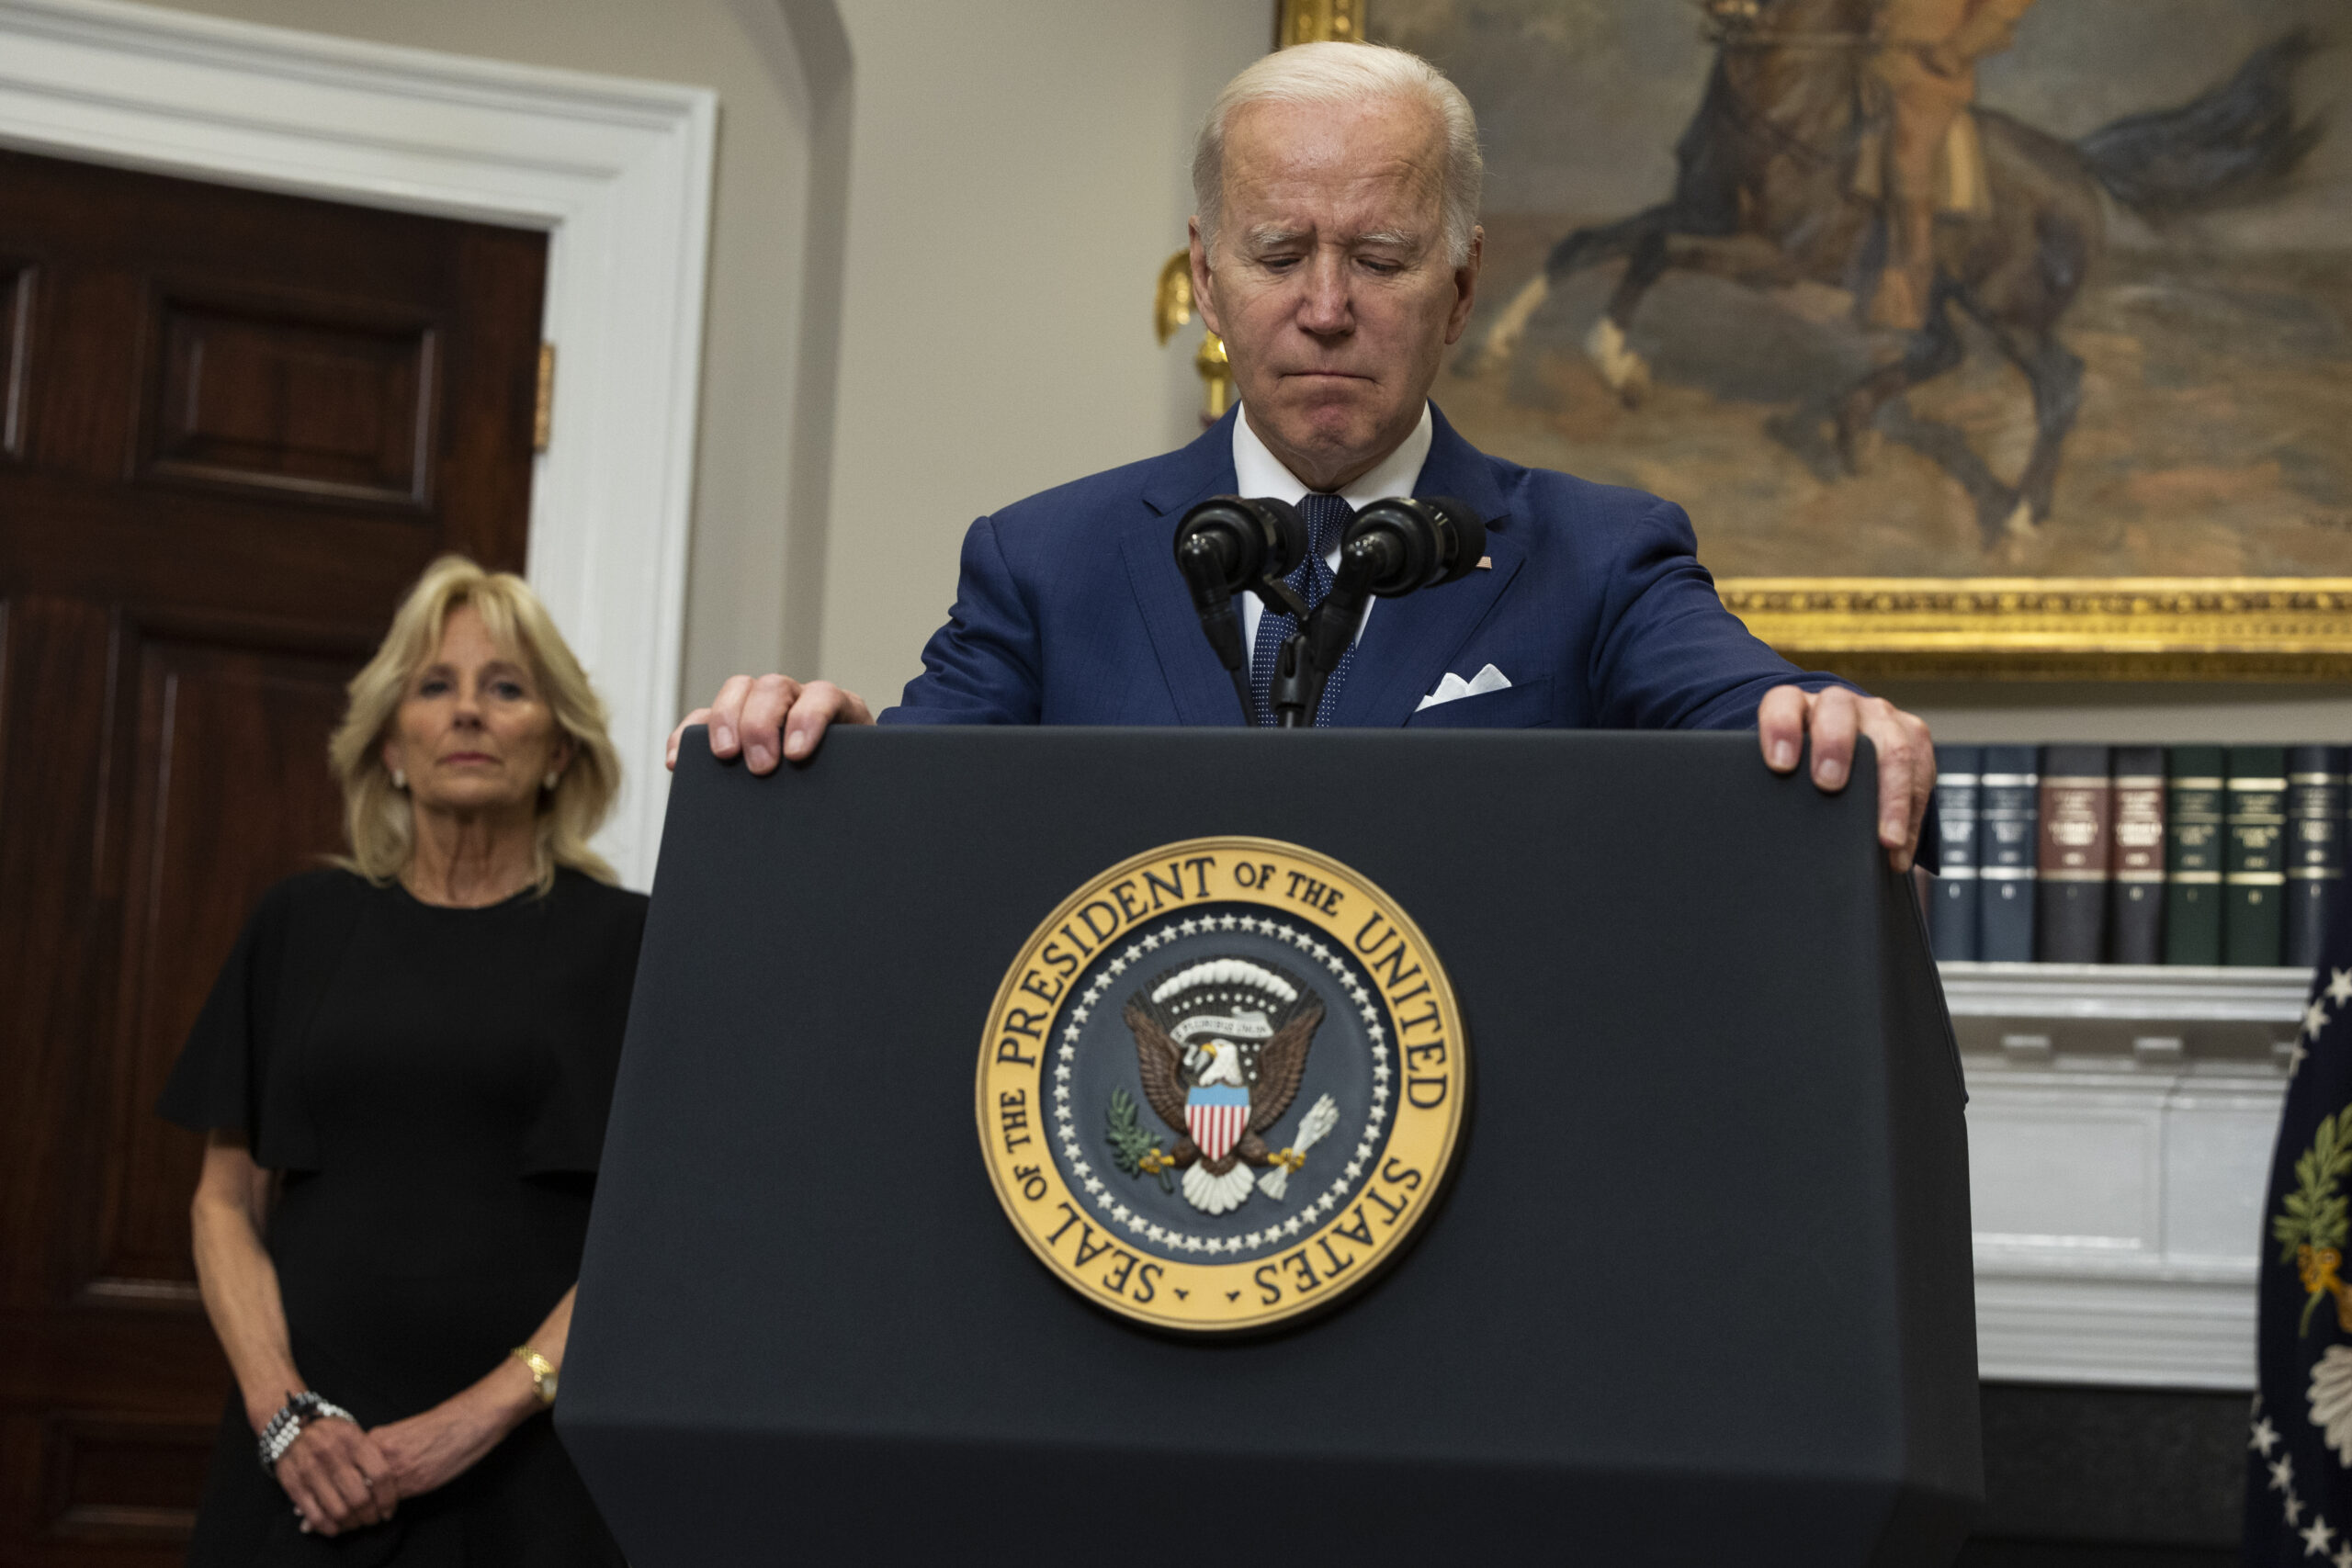 Biden addresses gun control following mass shootings